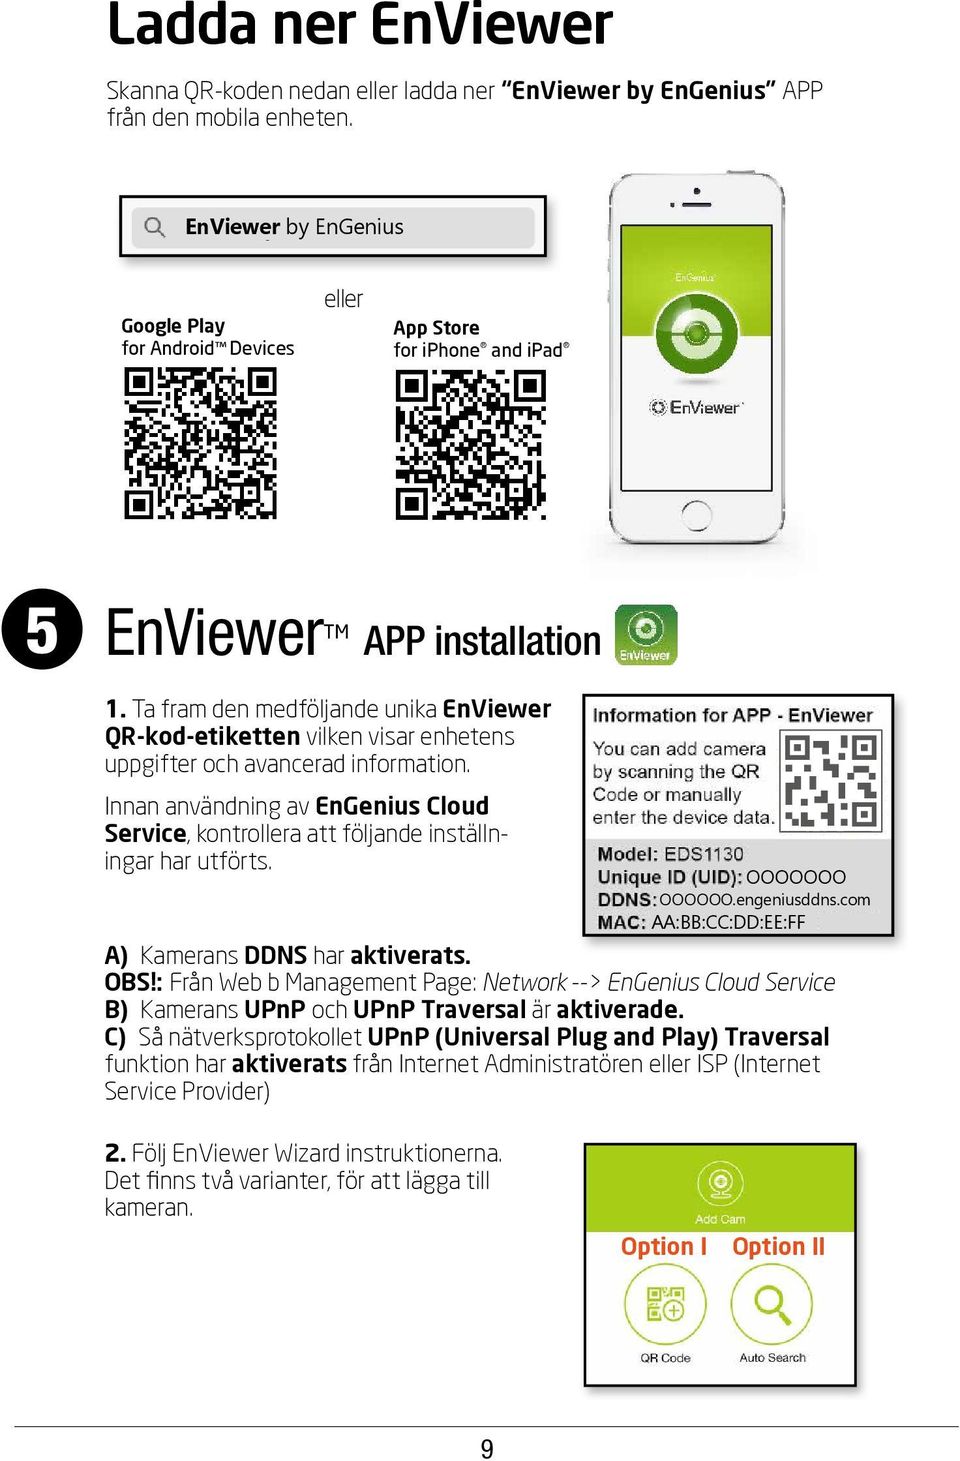 Ta fram den medföljande unika EnViewer QR-kod-etiketten vilken visar enhetens uppgifter och avancerad information.